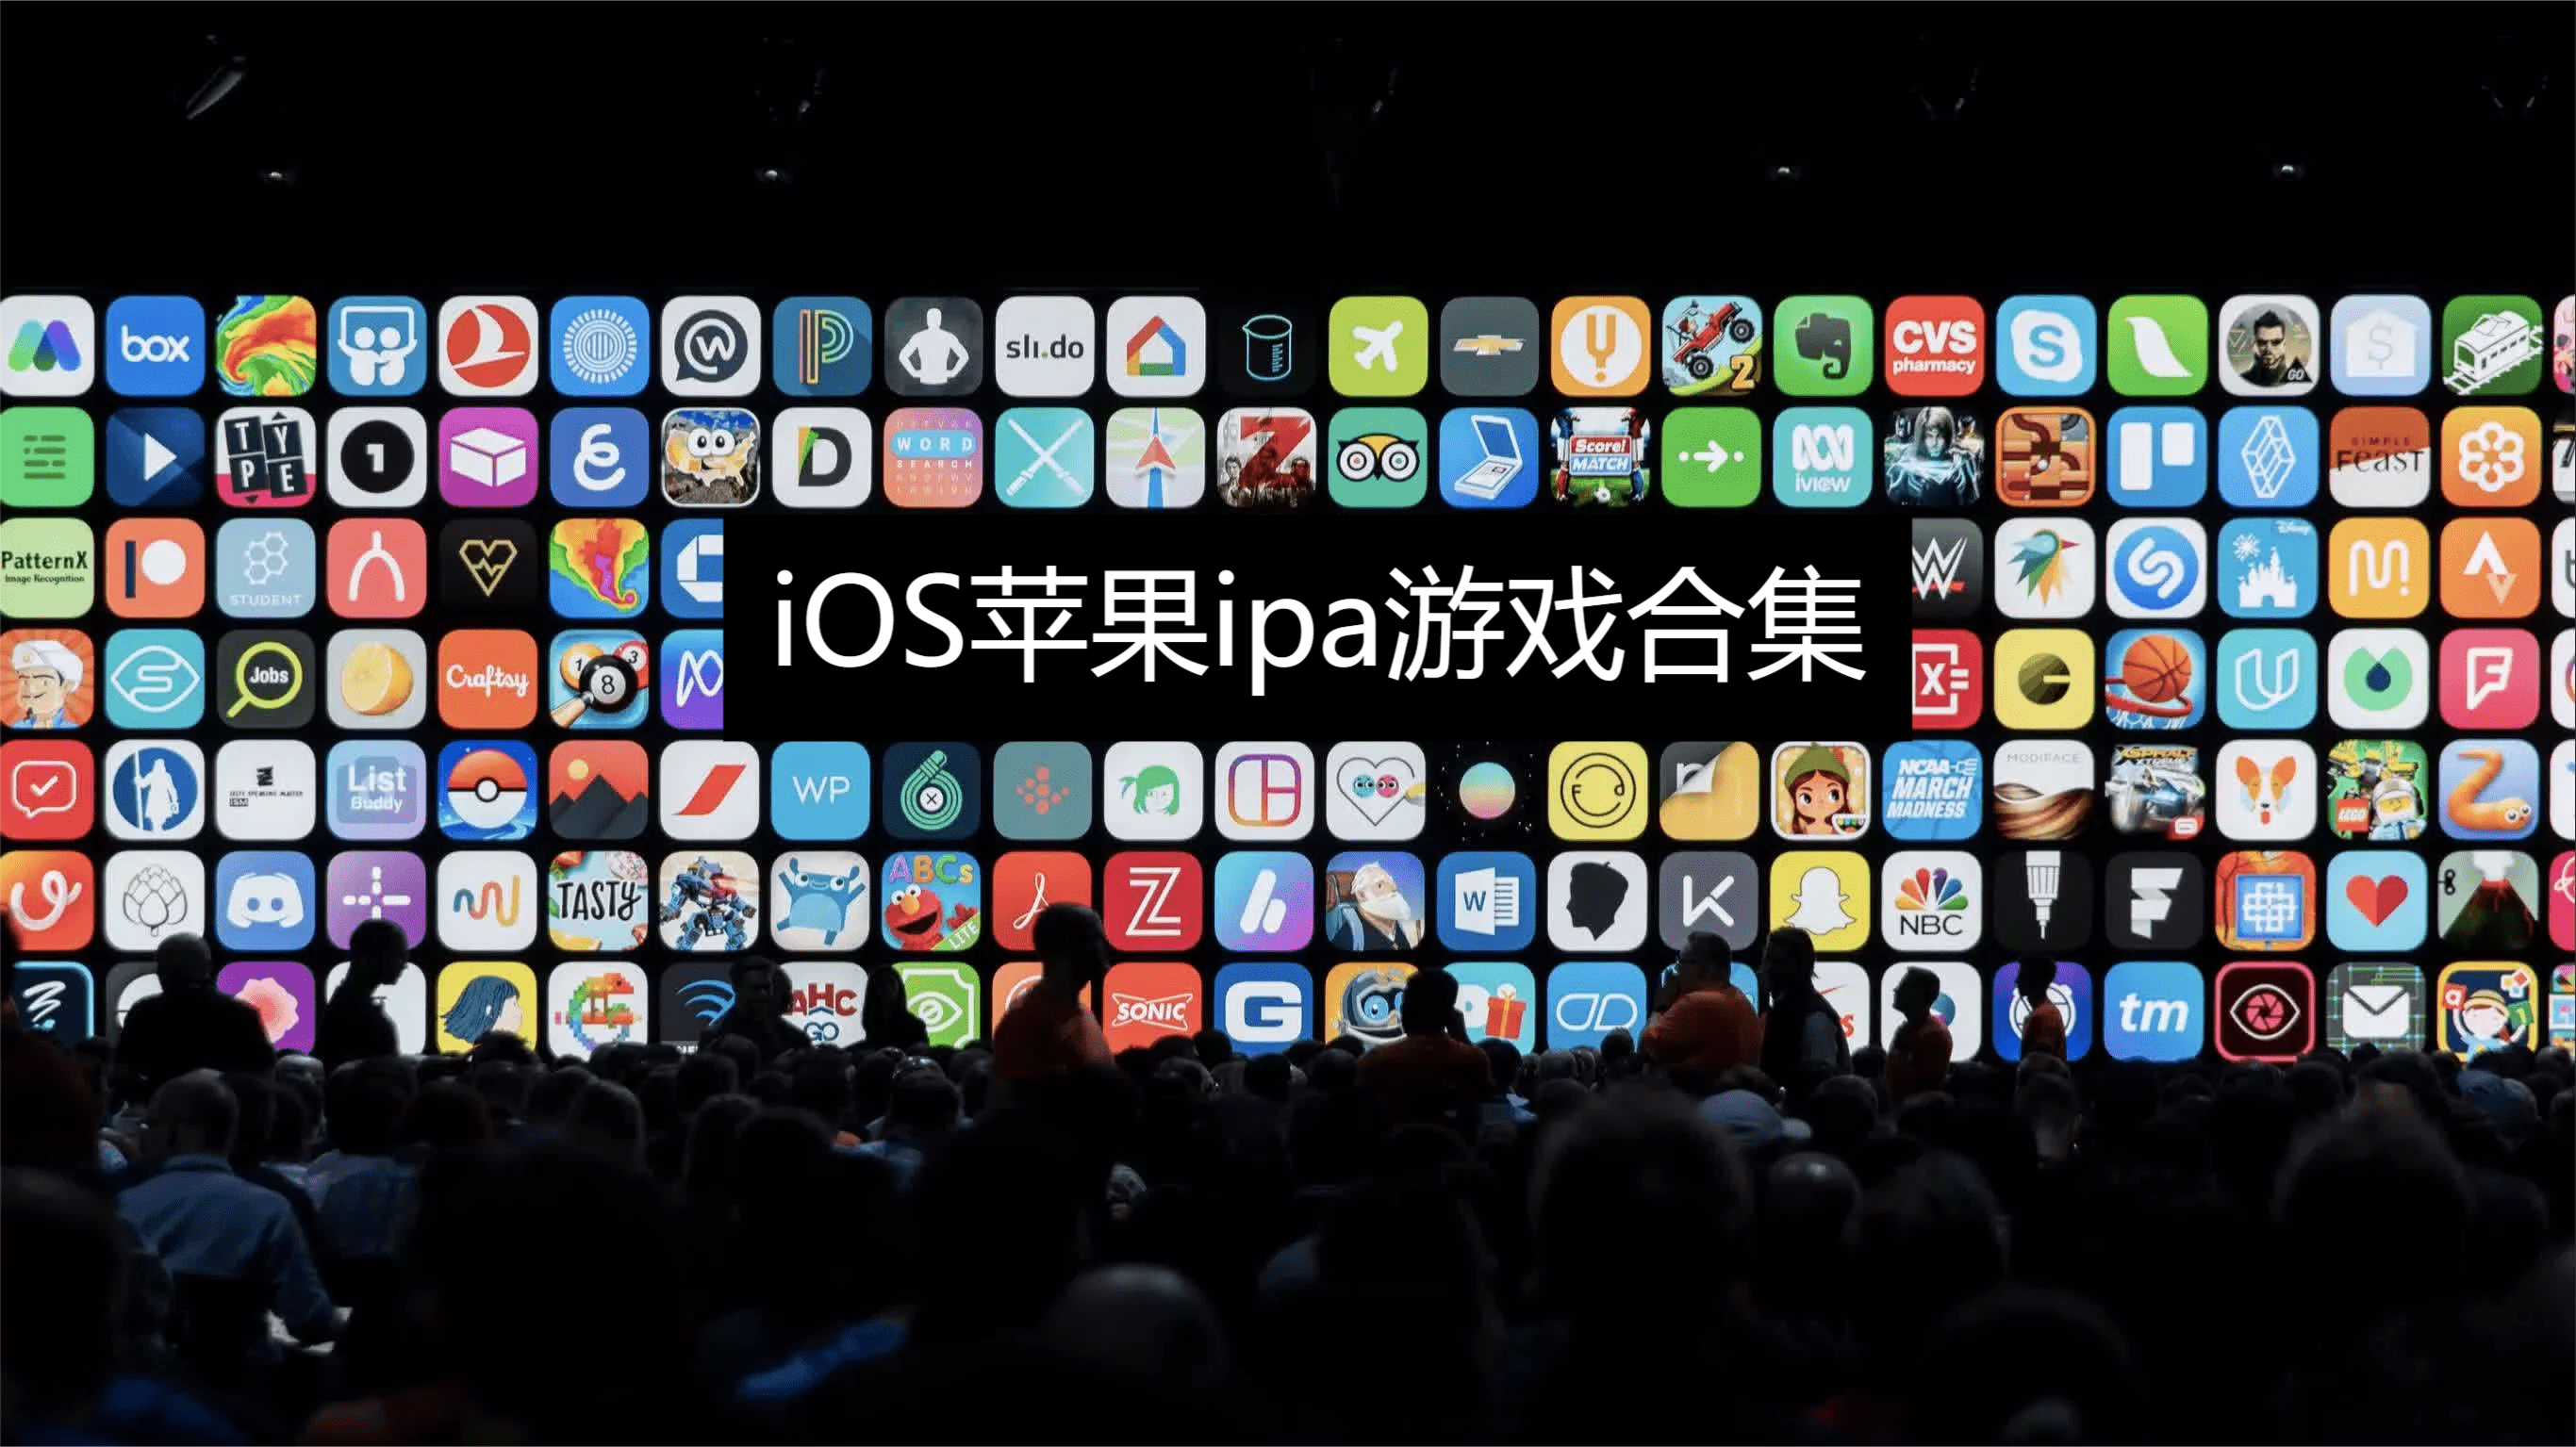 iOS苹果ipa游戏合集